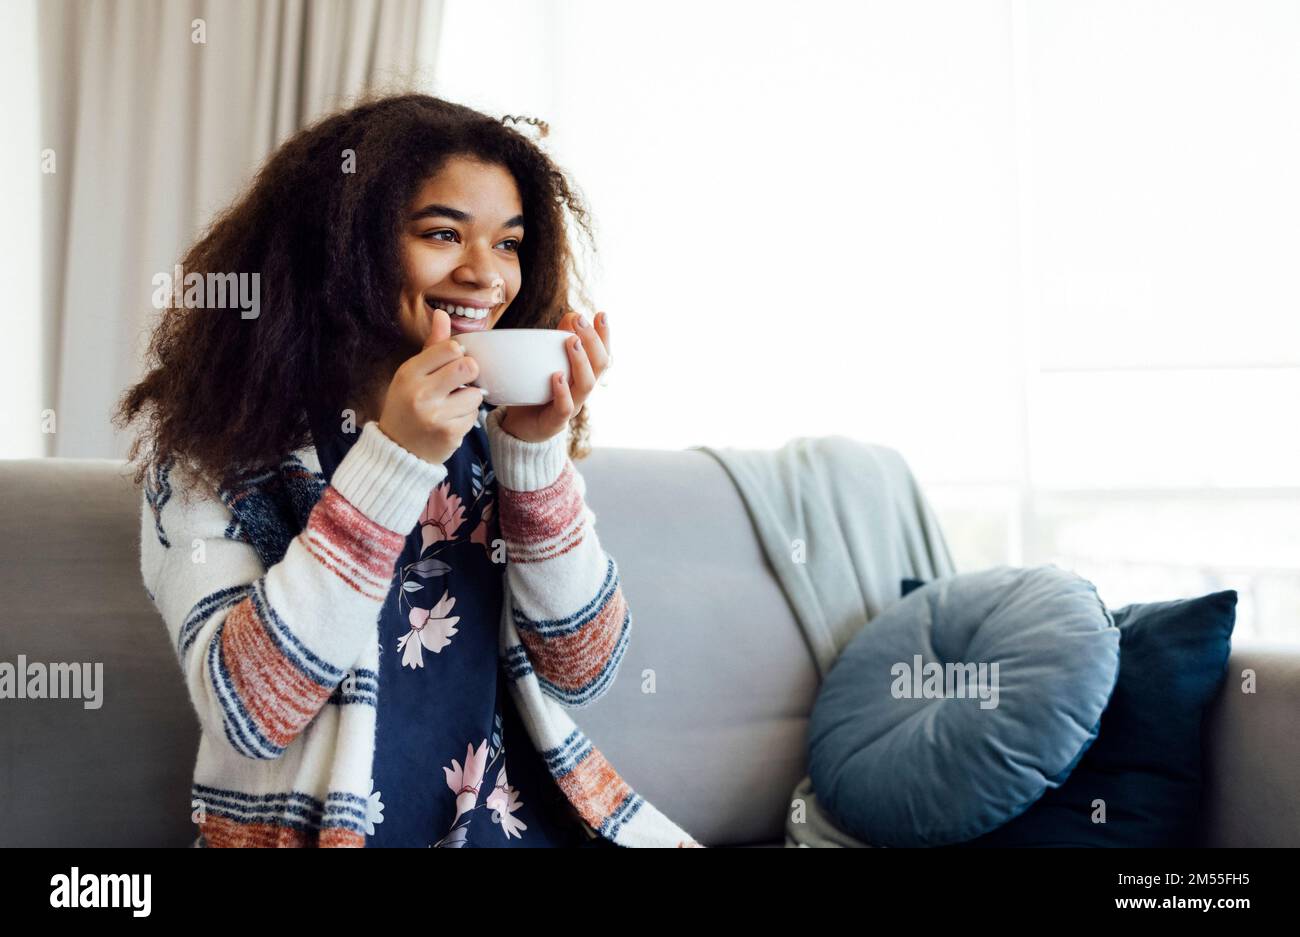 Fröhliches, lächelndes afroamerikanisches Mädchen, das sich auf der Couch mit einer Tasse Kaffee entspannt, sich zu Hause ausruht, den freien Tag genießt, warme Kleidung trägt Stockfoto